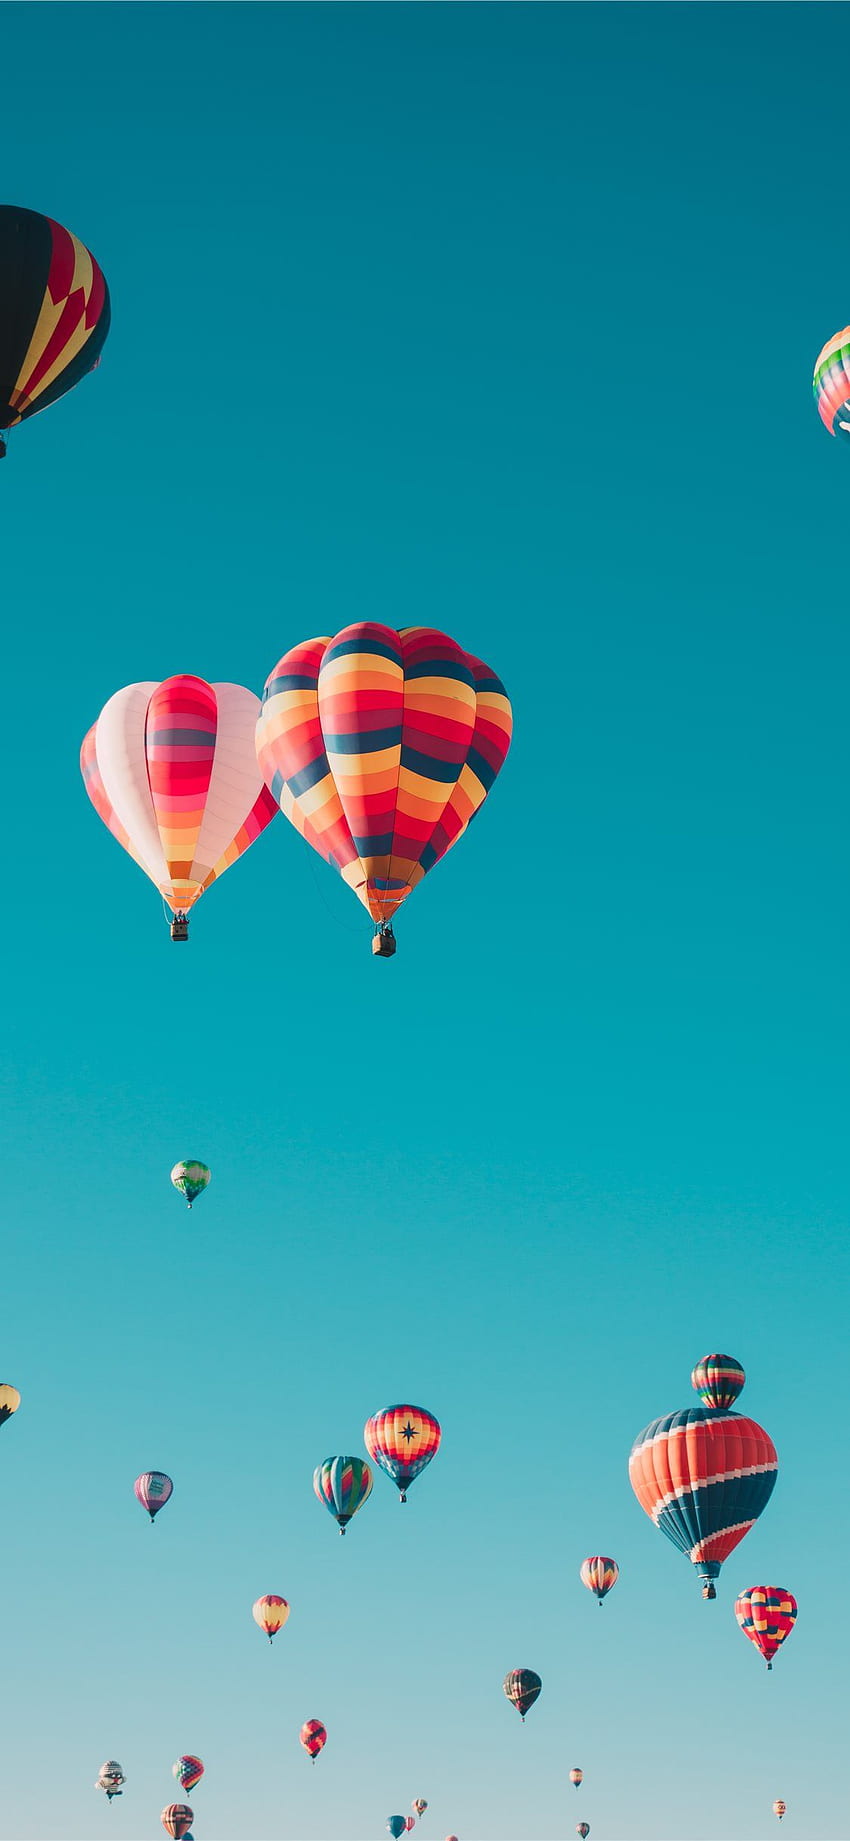 berbagai macam balon udara terbang di ketinggian. iPhone 11 wallpaper ponsel HD